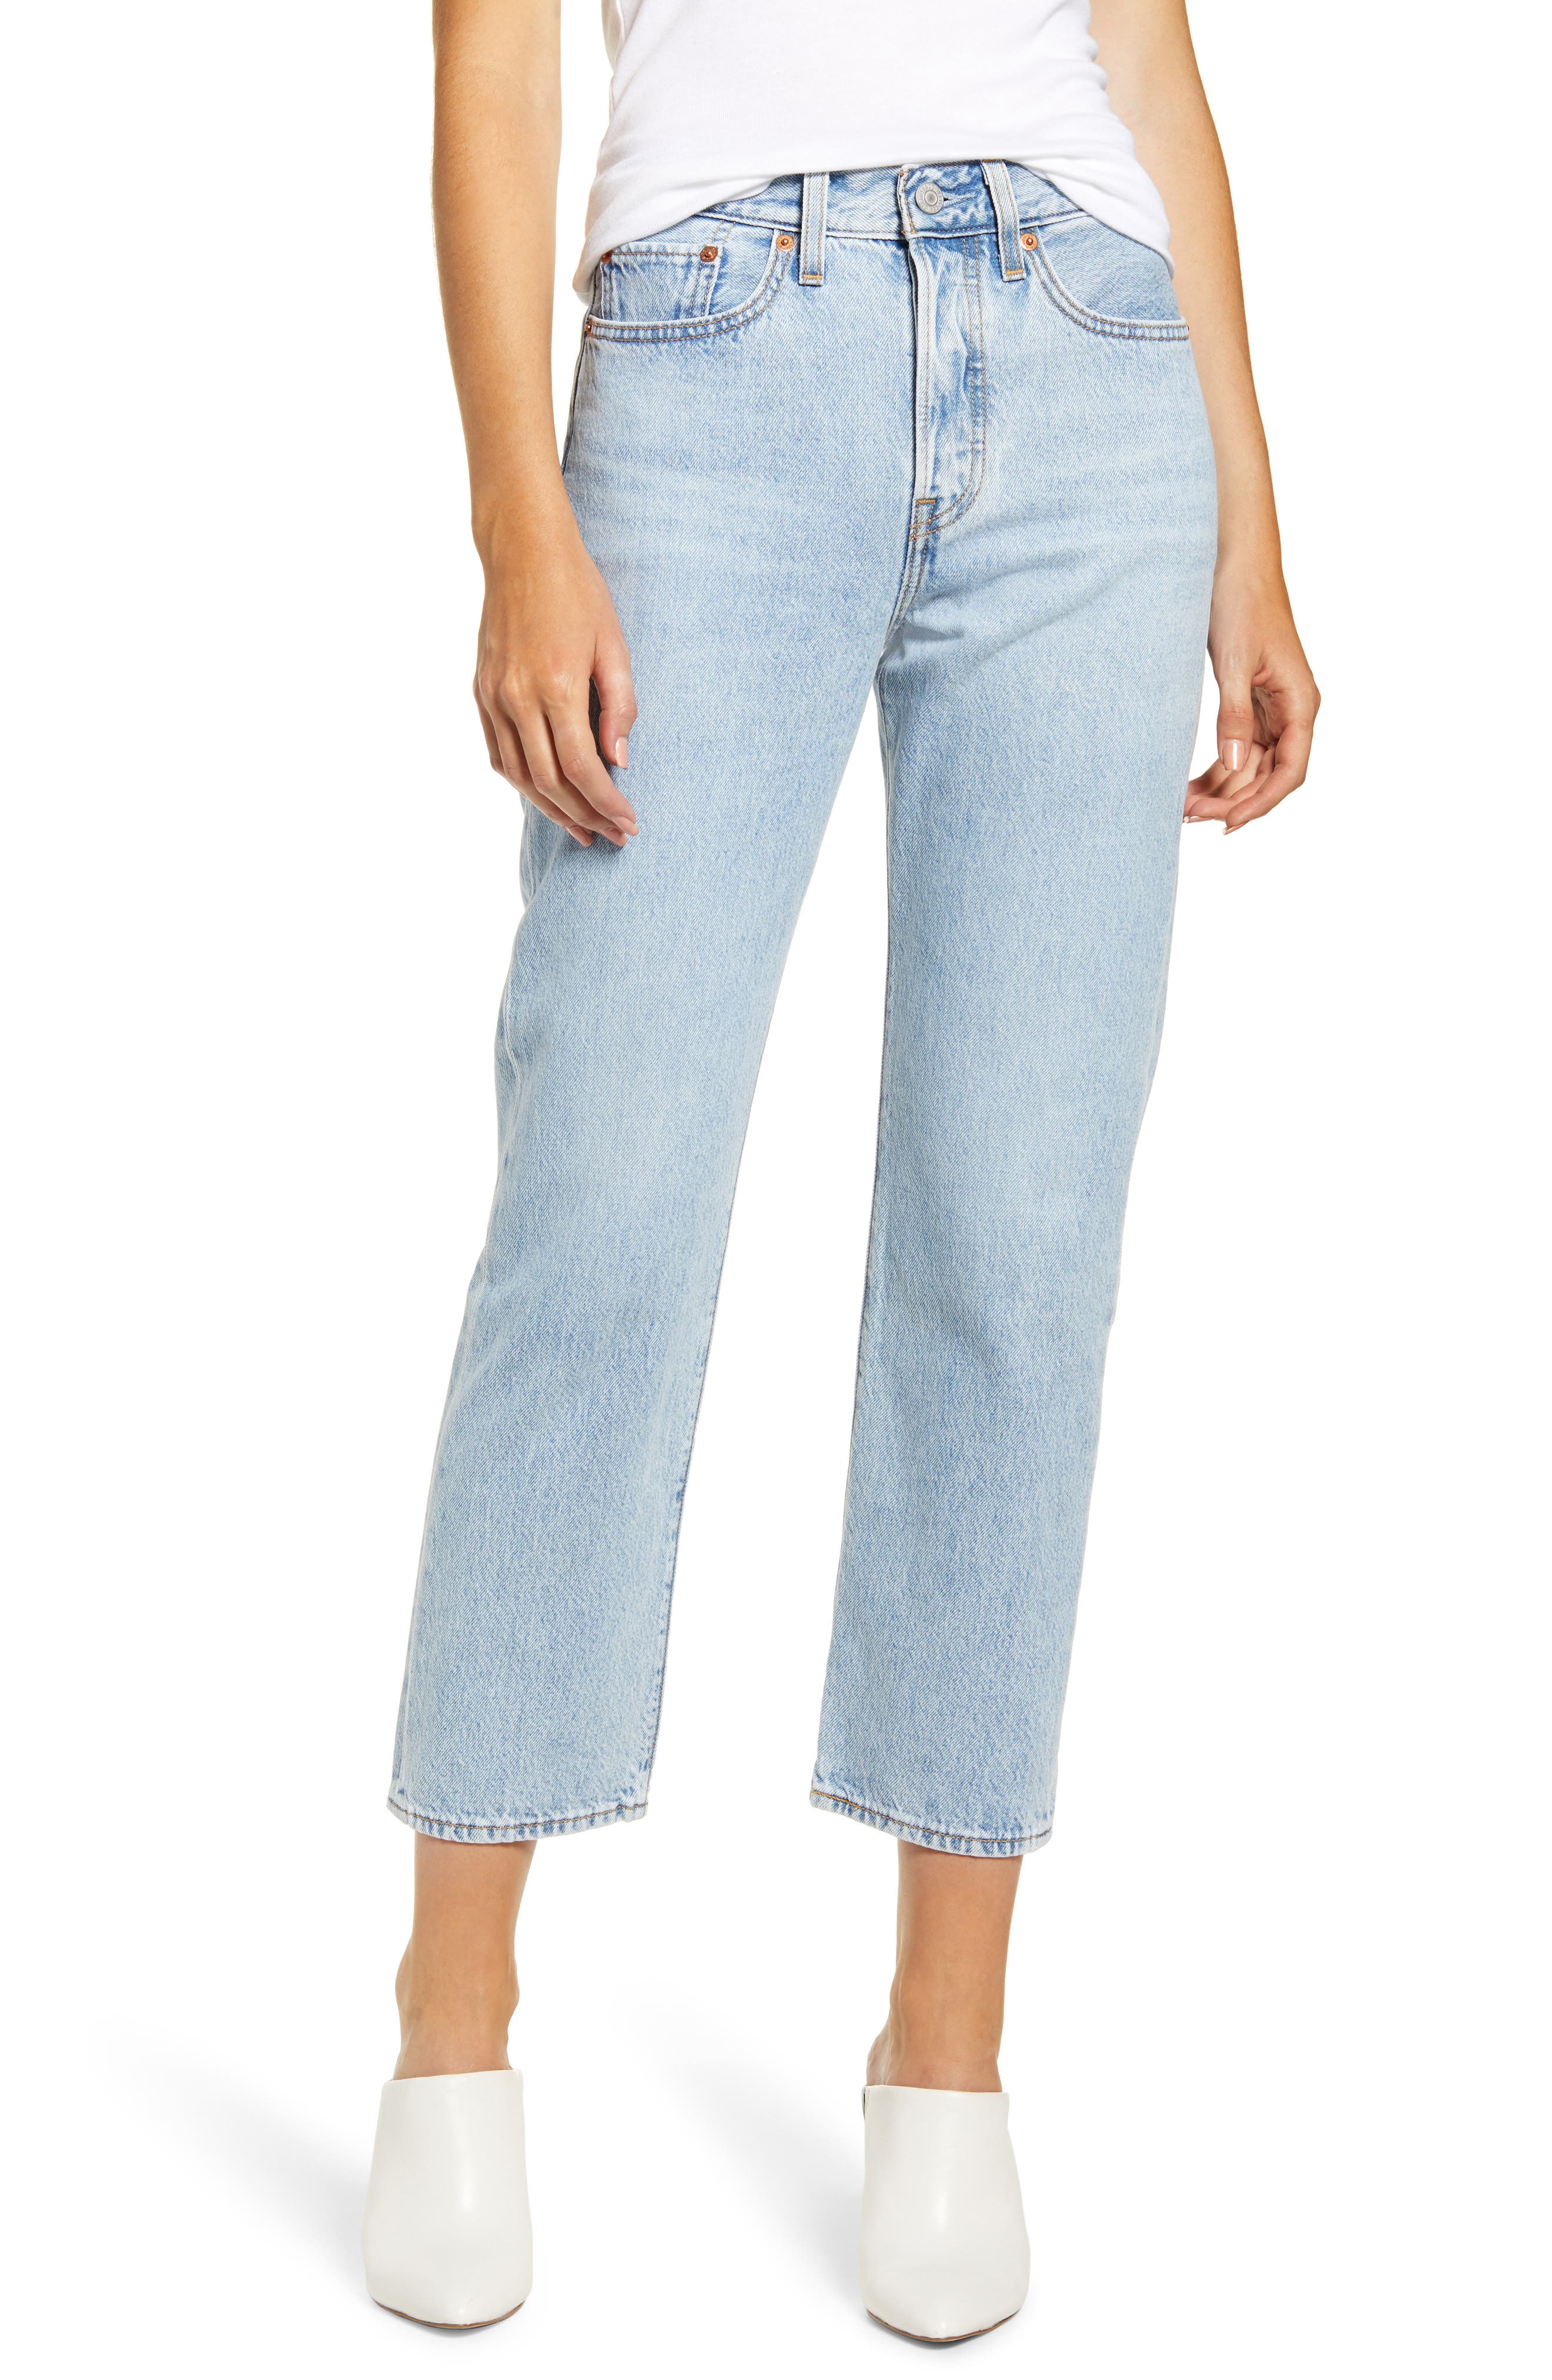 100 percent cotton jeans